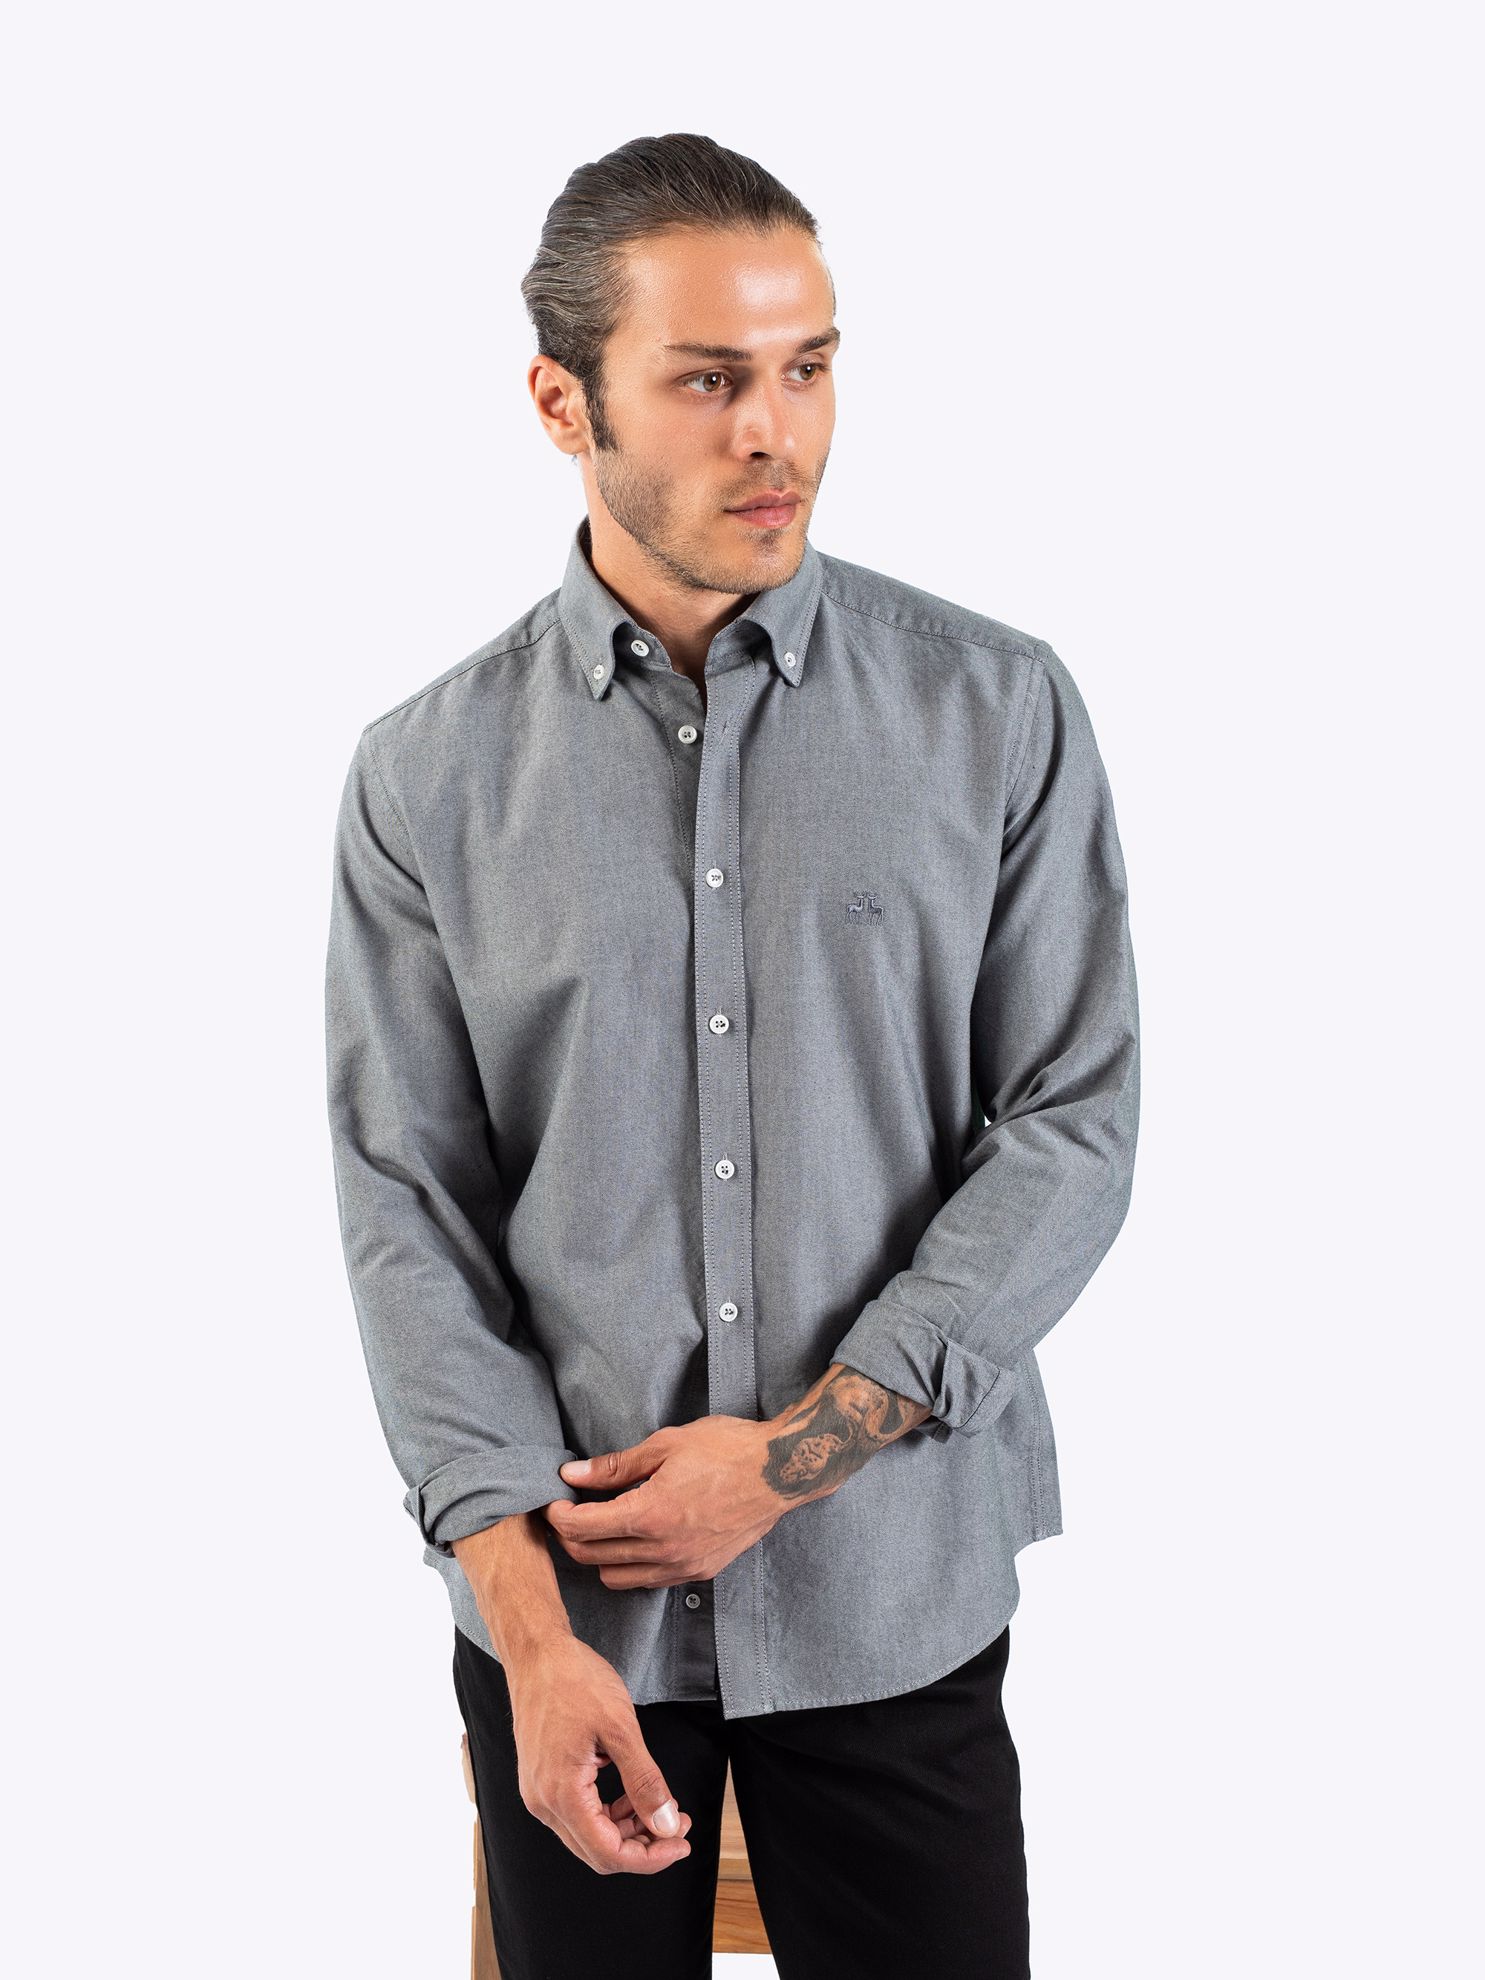 Karaca Erkek Slim Fit Gömlek-Gri. ürün görseli